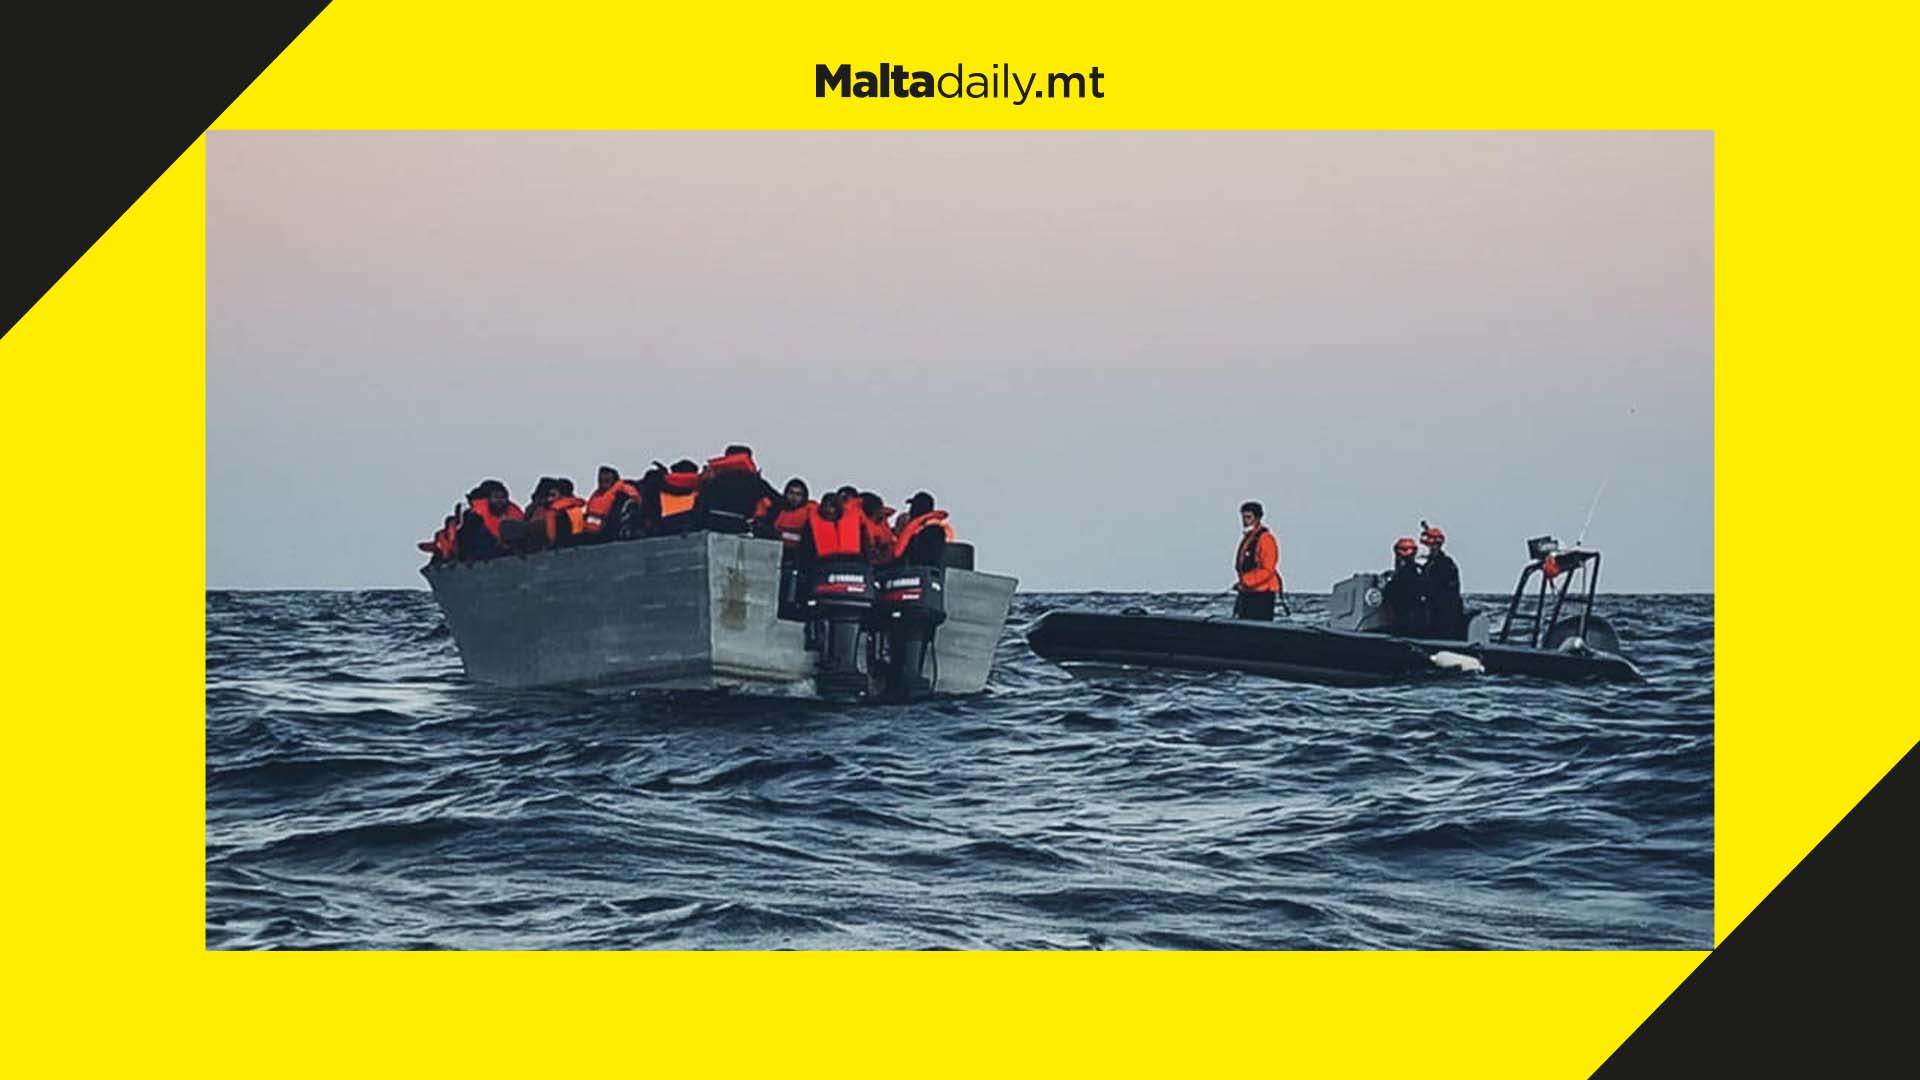 832 irregular migrants arrived in Malta by boat in 2021